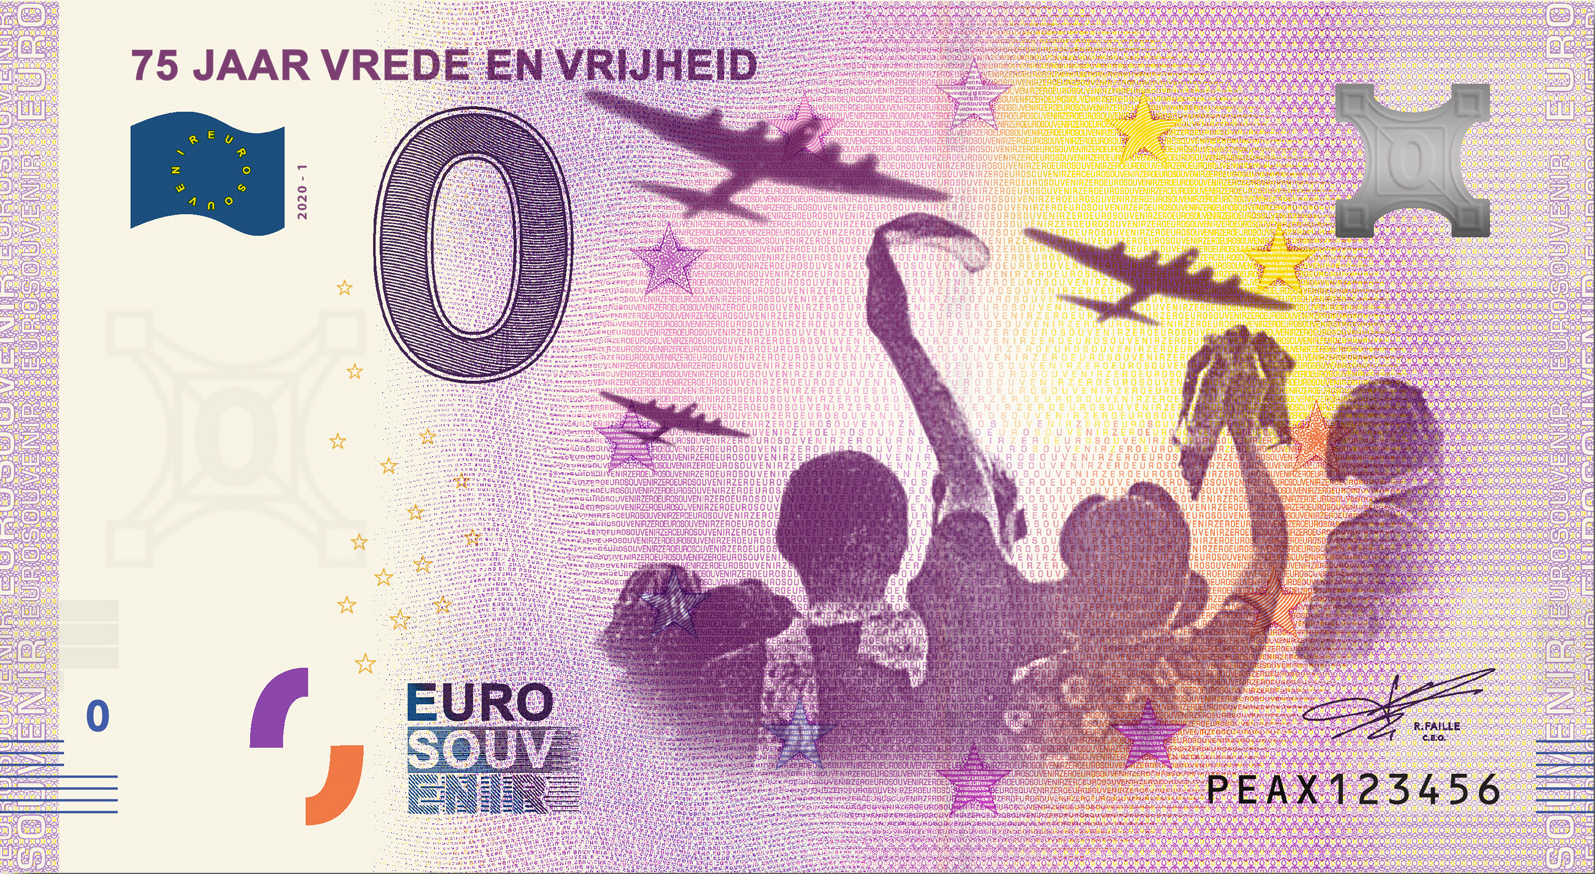 0 Euro souvenir note Nederland 2020 - Vrede en Vrijheid